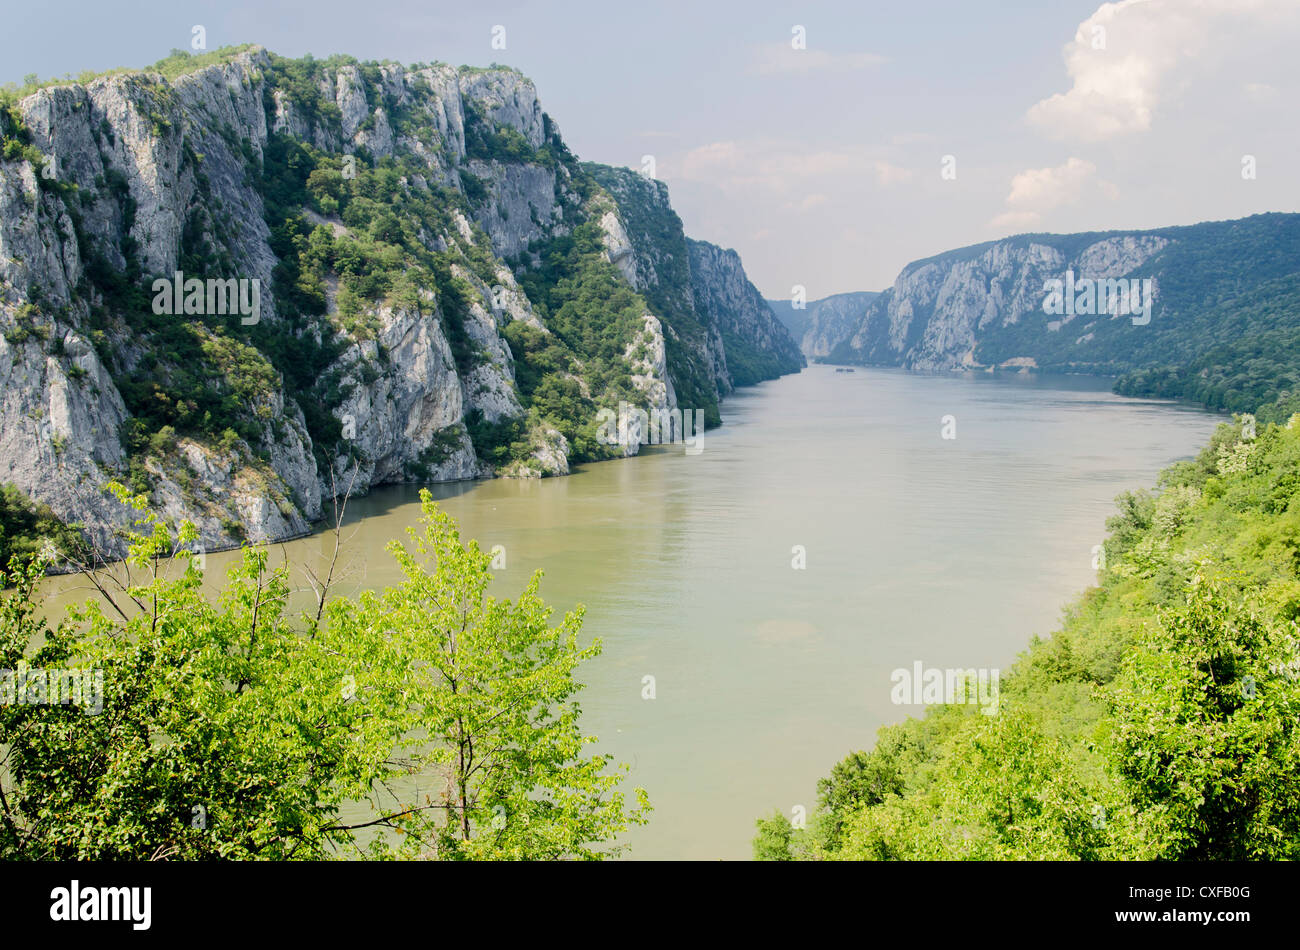 Danube gorge in Serbia Stock Photo